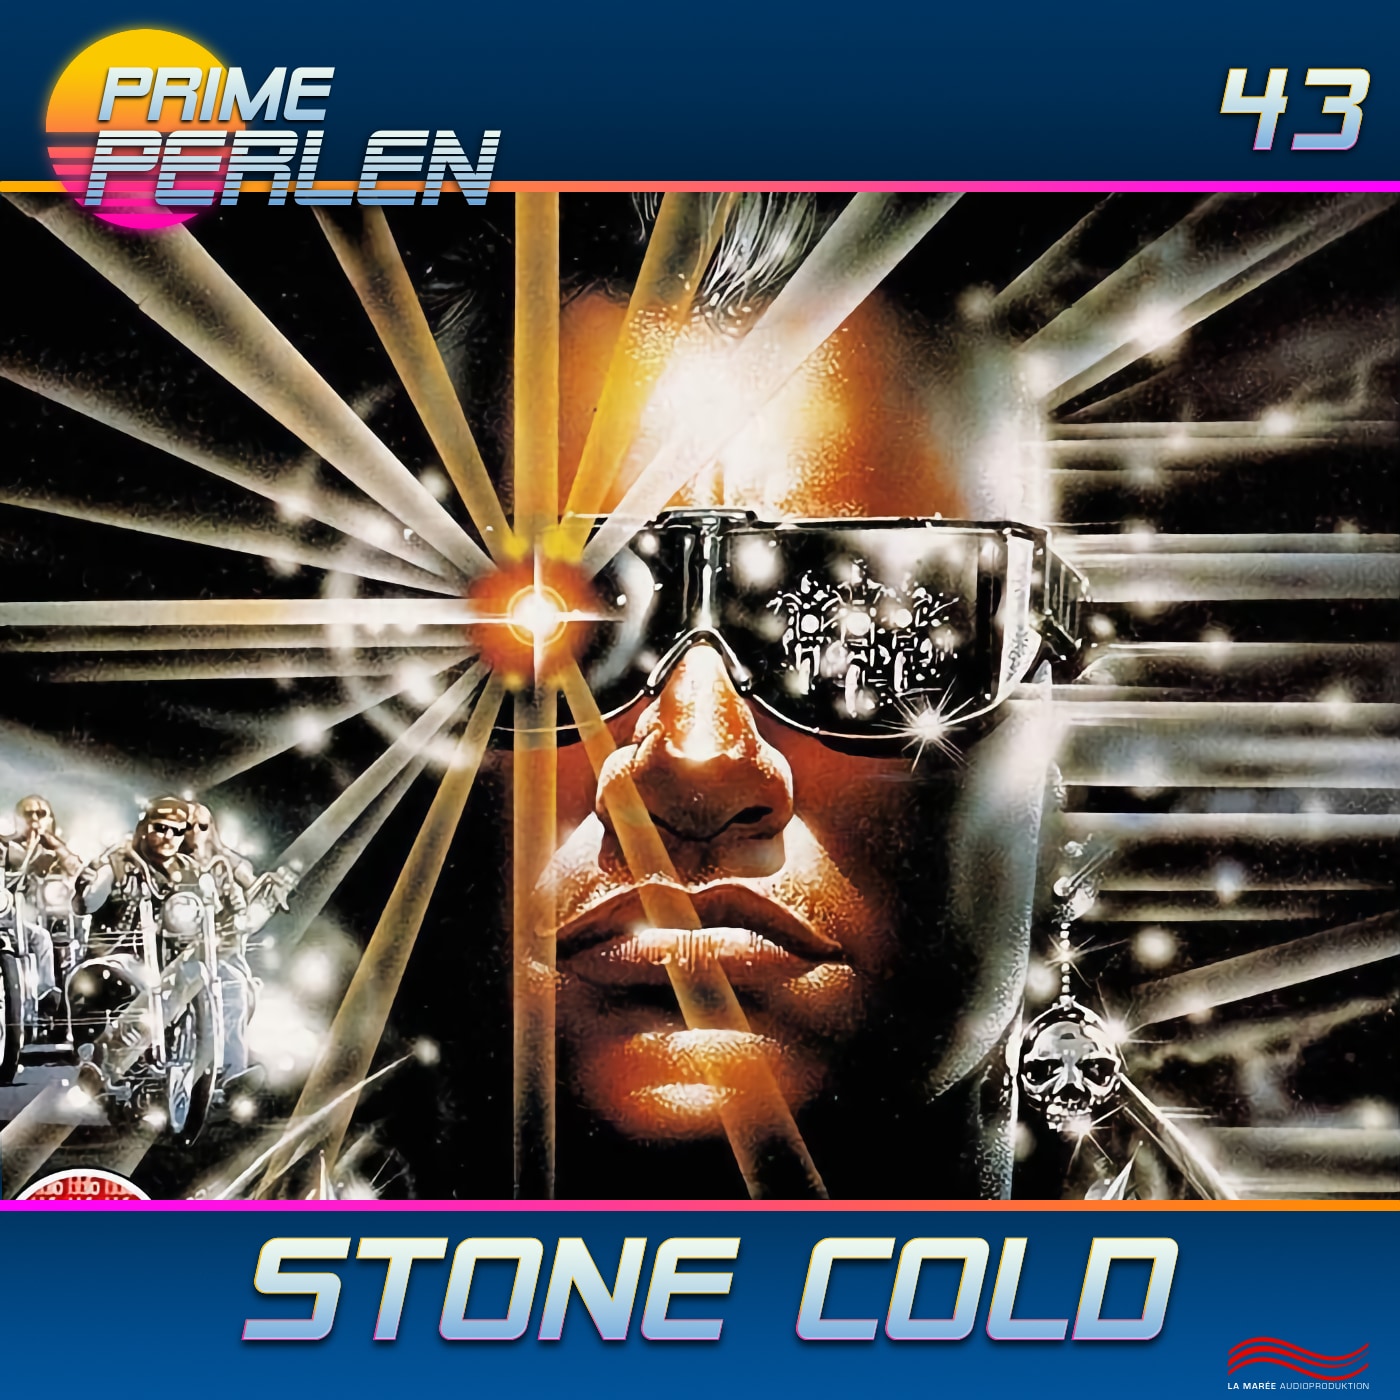 Prime Perlen #43 – Stone Cold